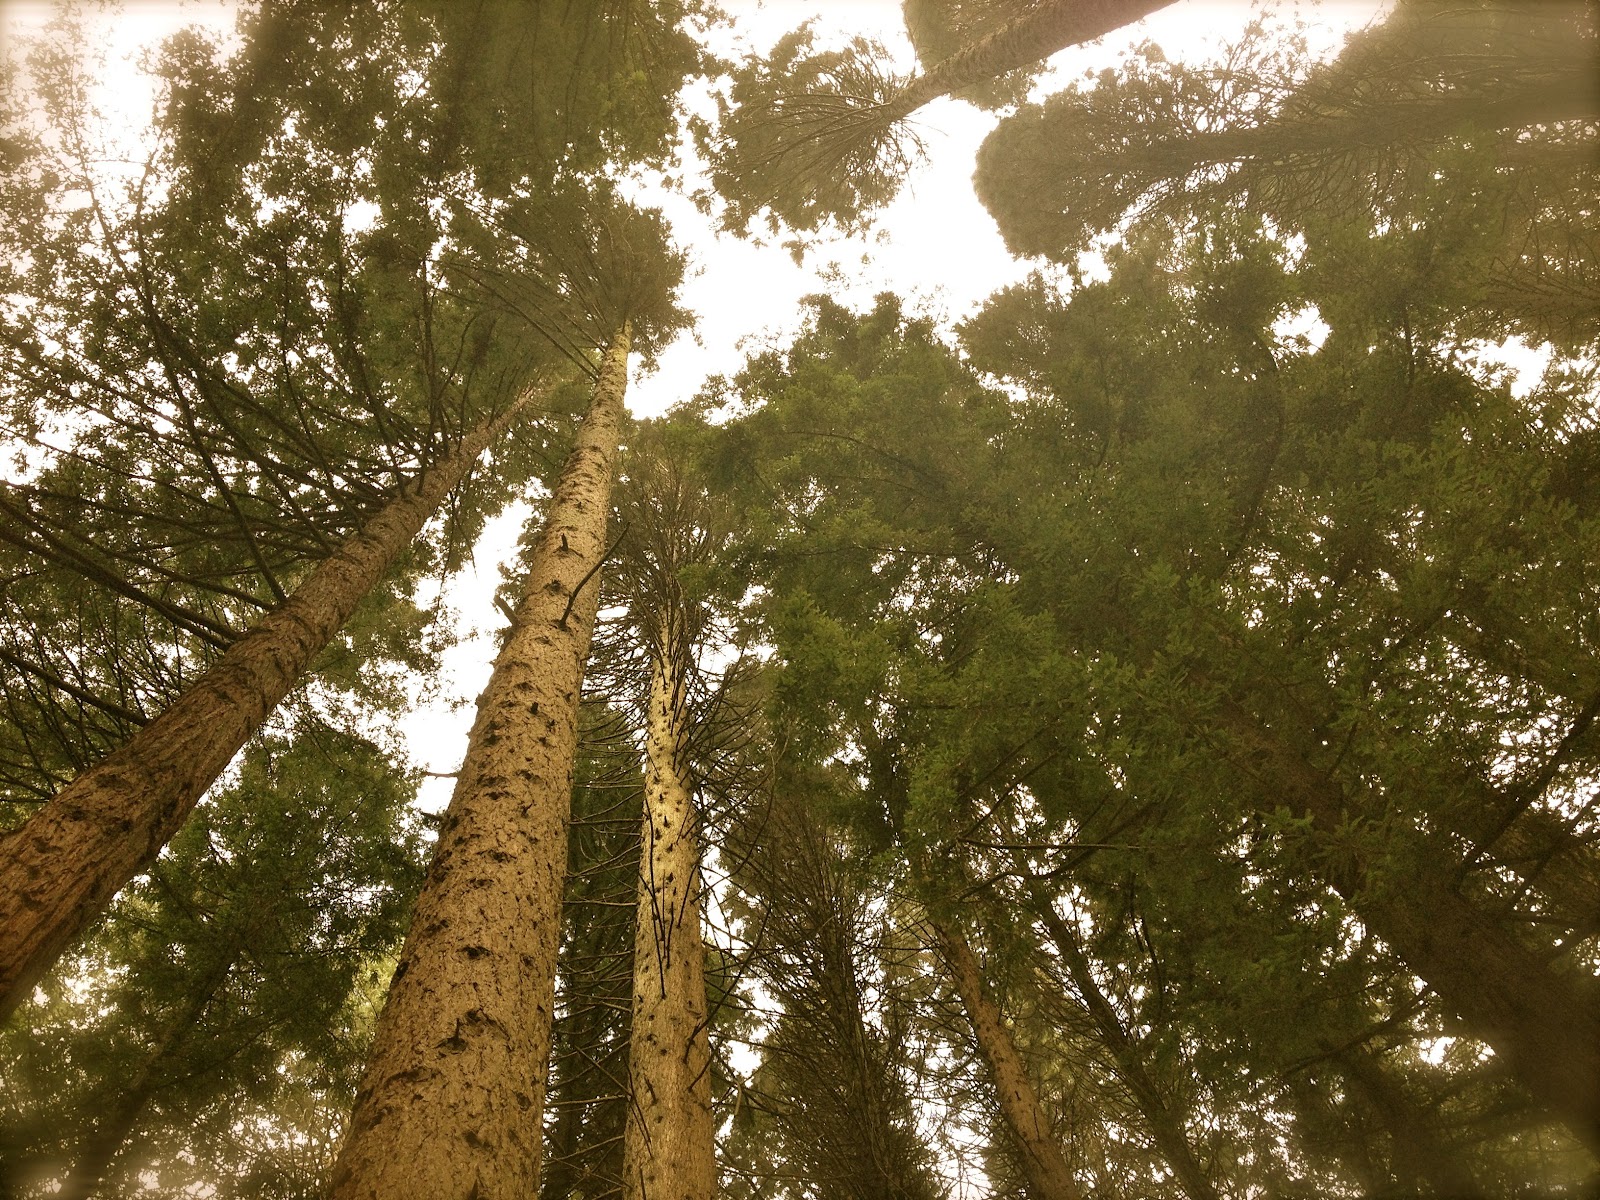 http://widowsvoice.com/wp-content/uploads/2013/09/redwoods.jpg